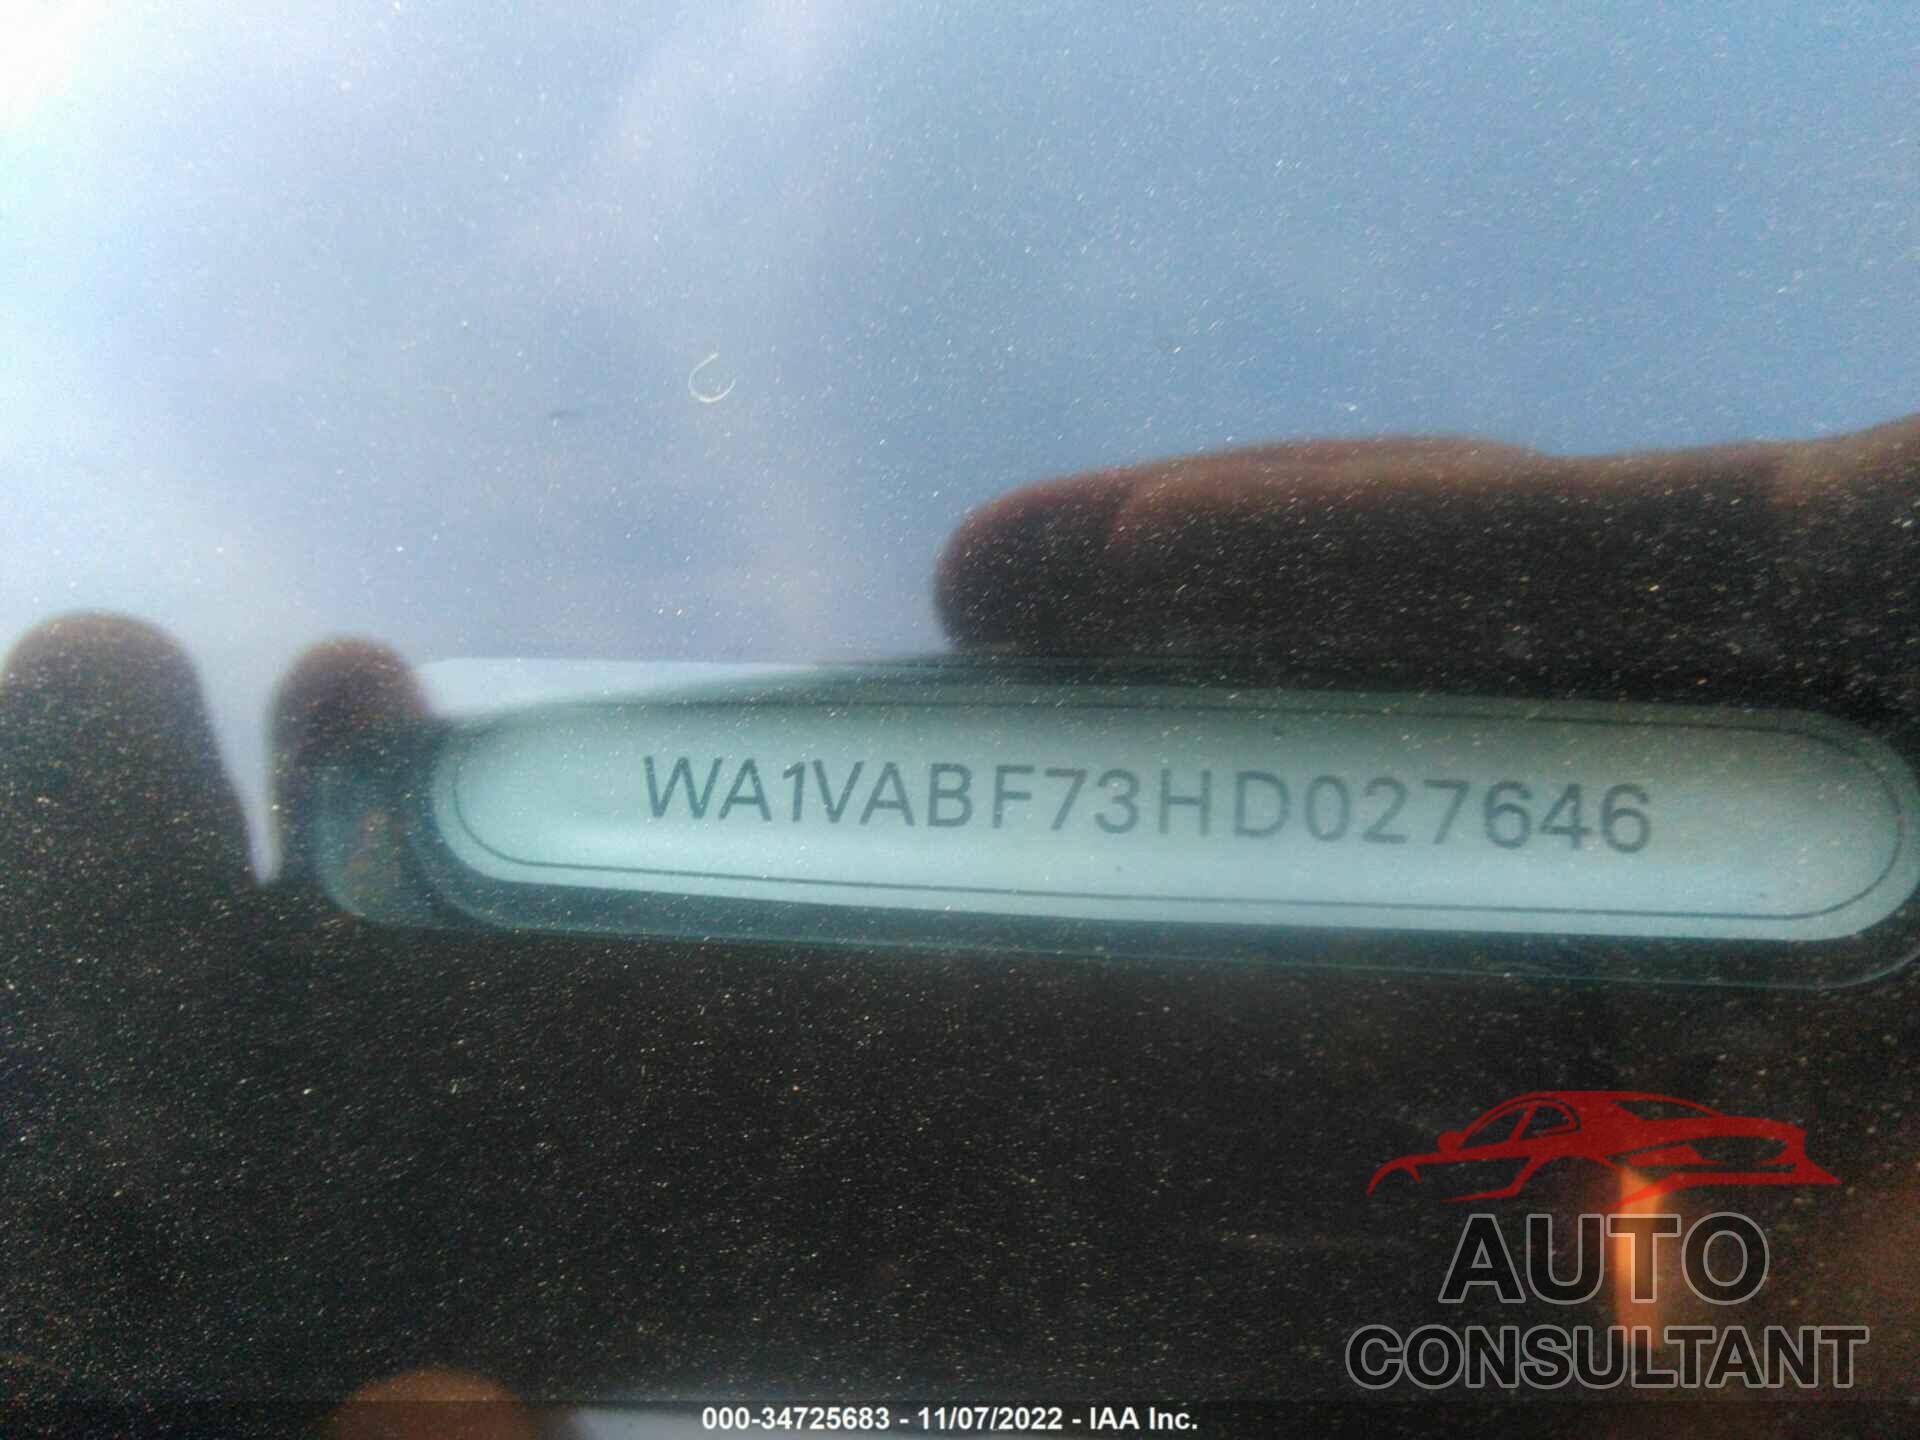 AUDI Q7 2017 - WA1VABF73HD027646